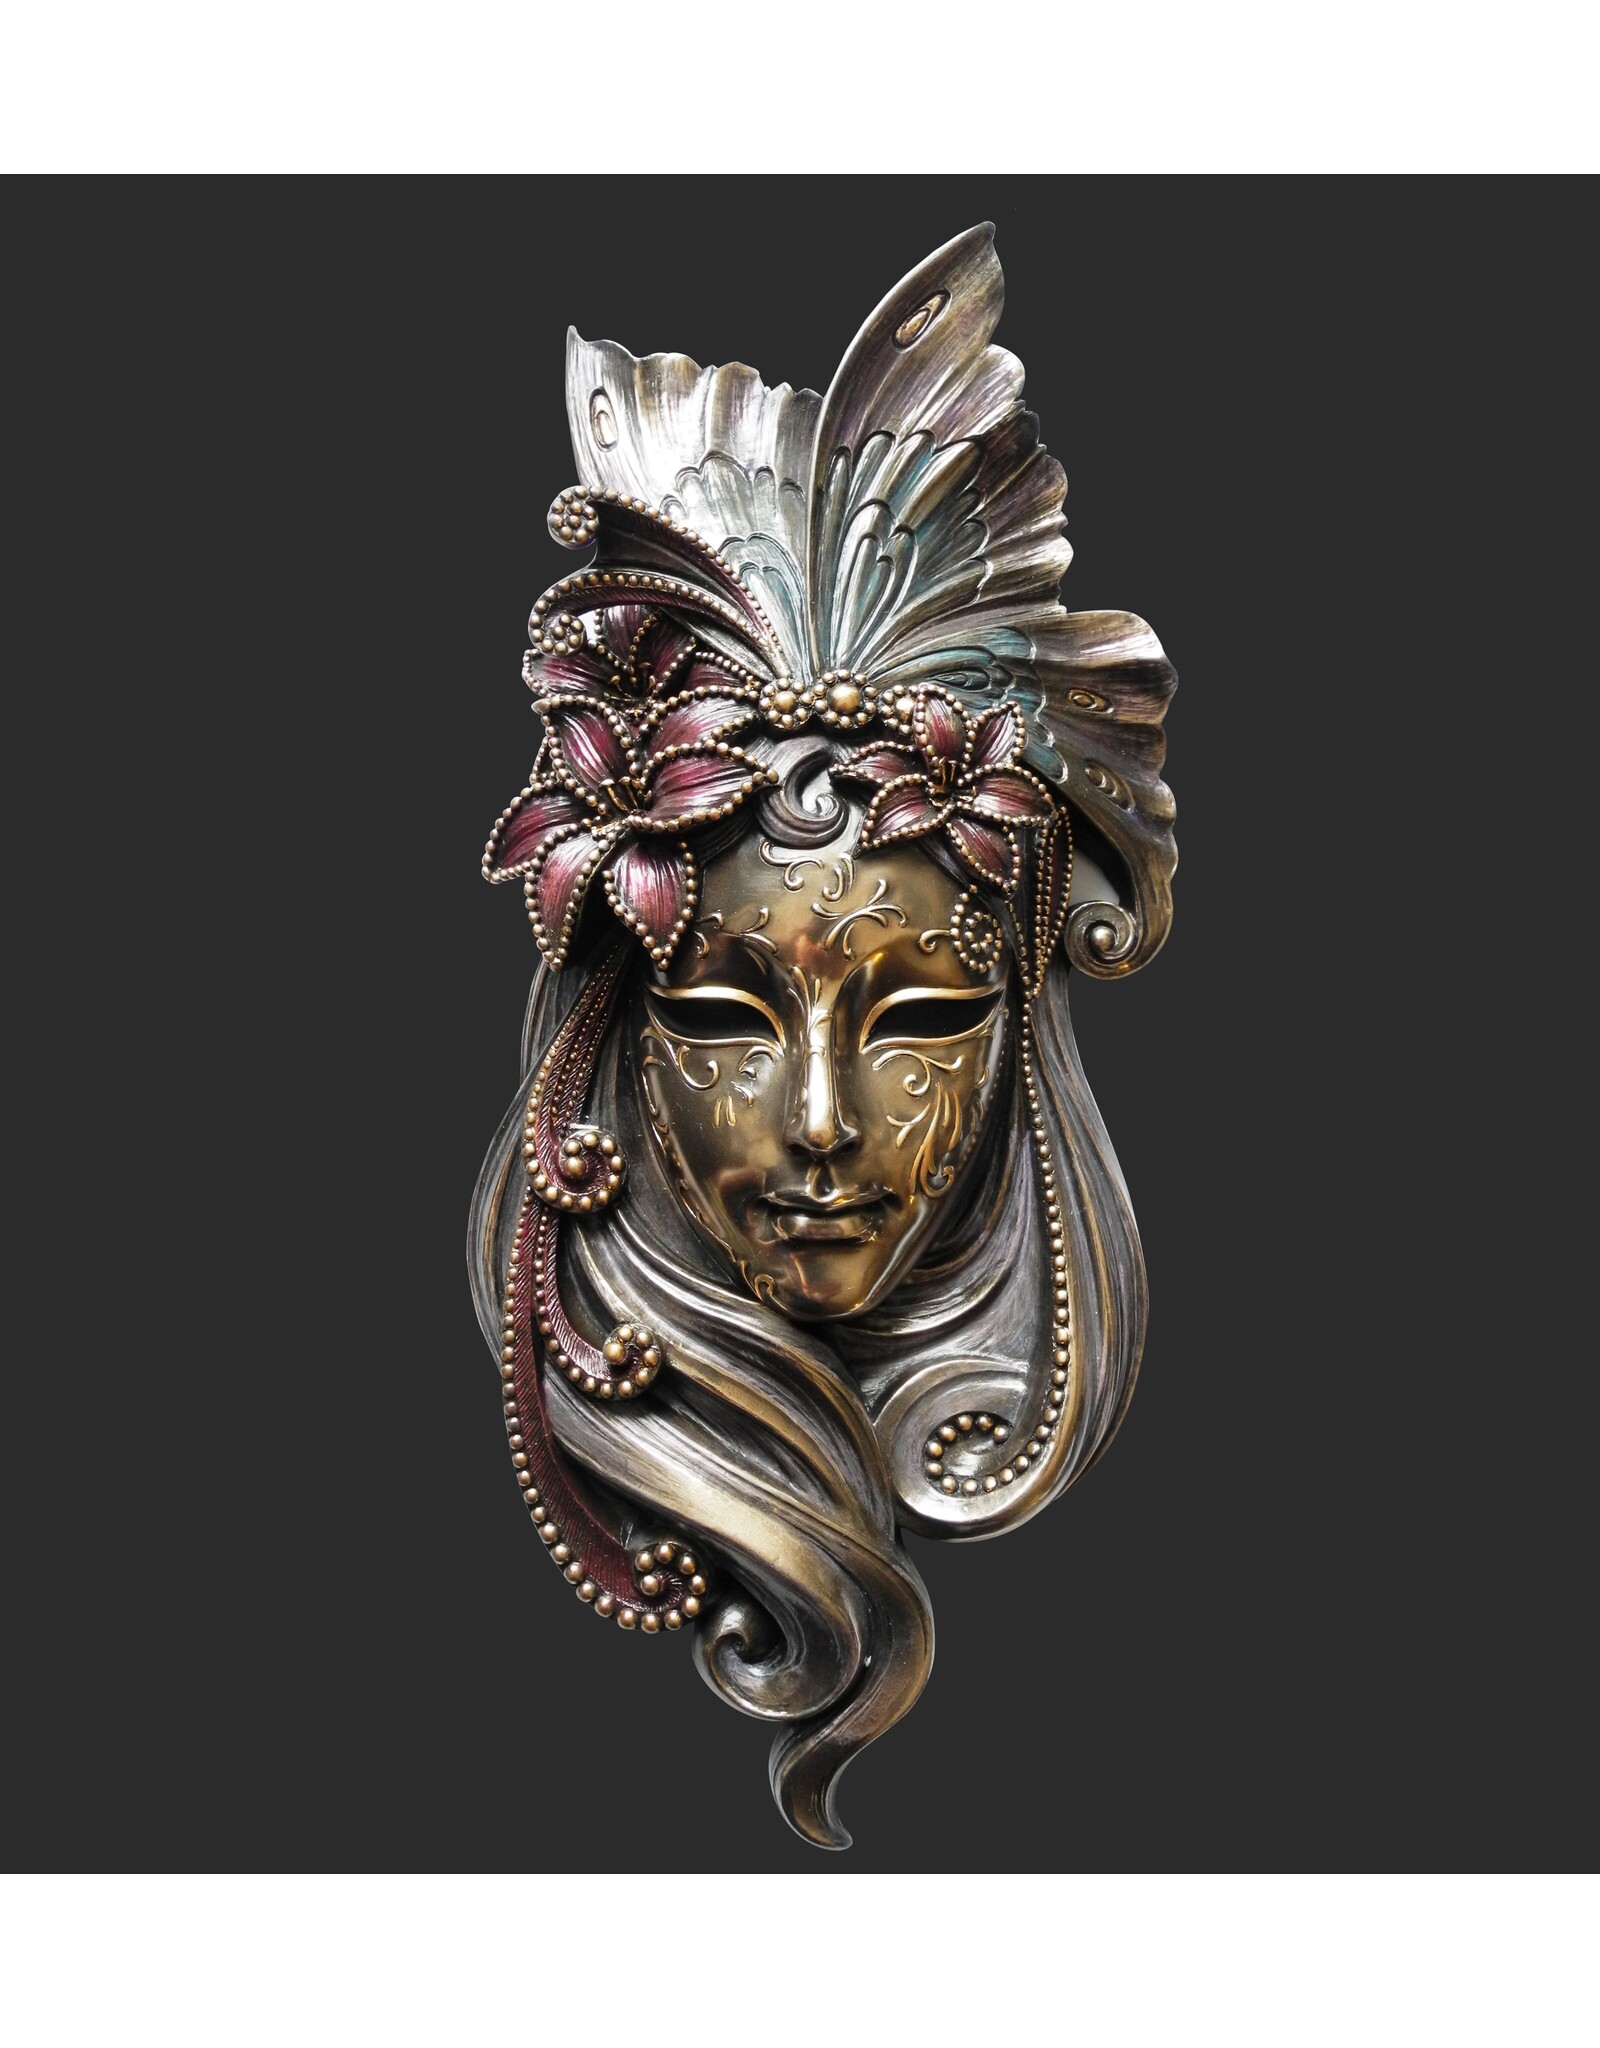 Veronese Design Miscellaneous - Venetian Mask Il Giglio (Lily) Veronese Design